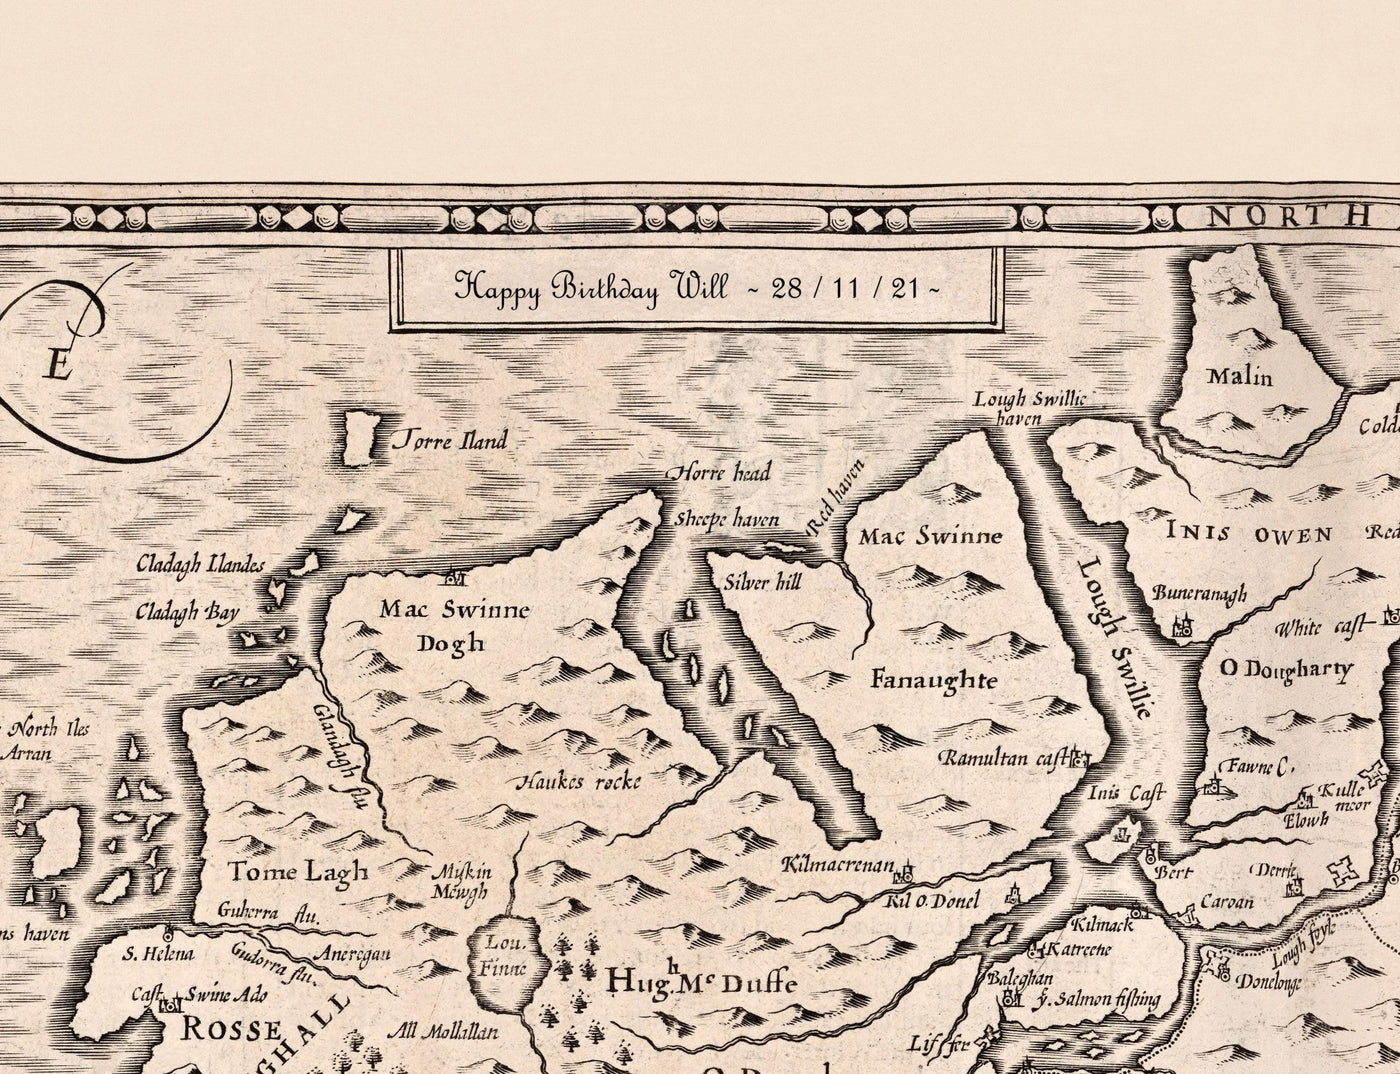 Old Monochrome Map of Berkshire 1611 by John Speed - Reading, Slough, Bracknell, Maidenhead, Henley, Eton, Windsor Castle